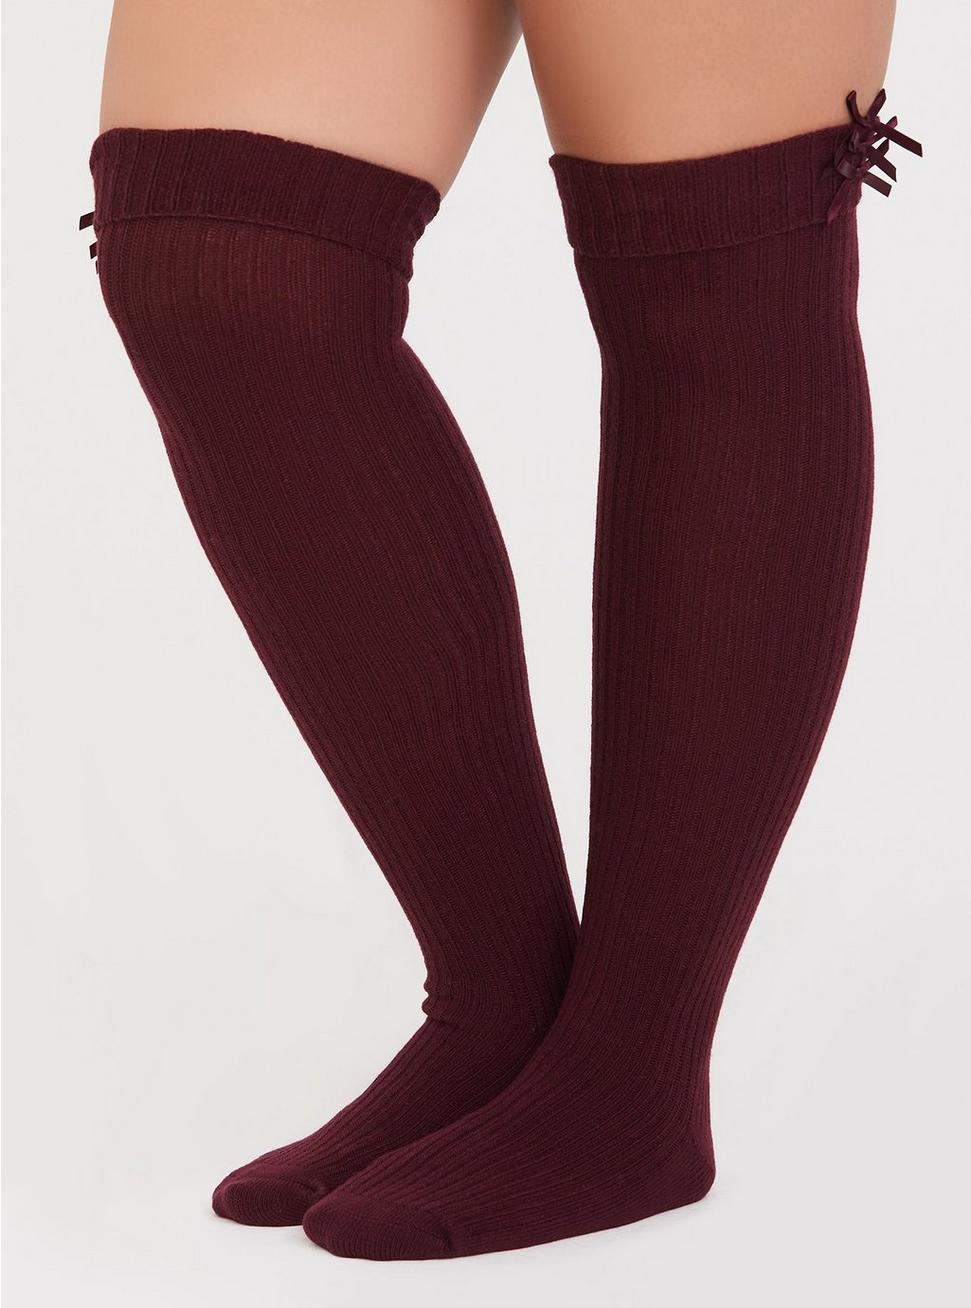 david stumbo recommends Torrid Knee High Socks